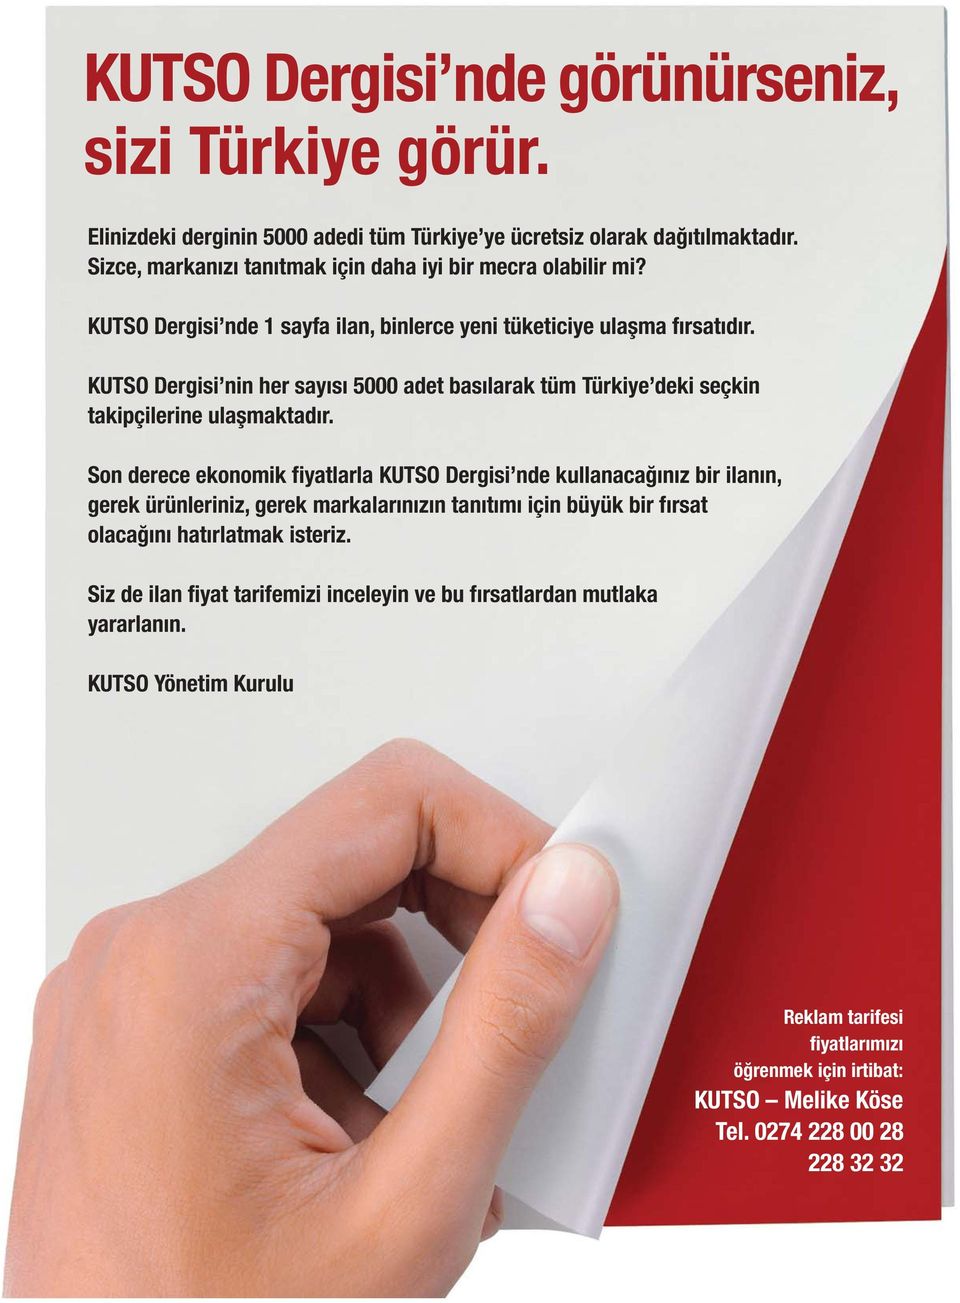 KUTSO Dergisi nin her sayýsý 5000 adet basýlarak tüm Türkiye deki seçkin takipçilerine ulaþmaktadýr.